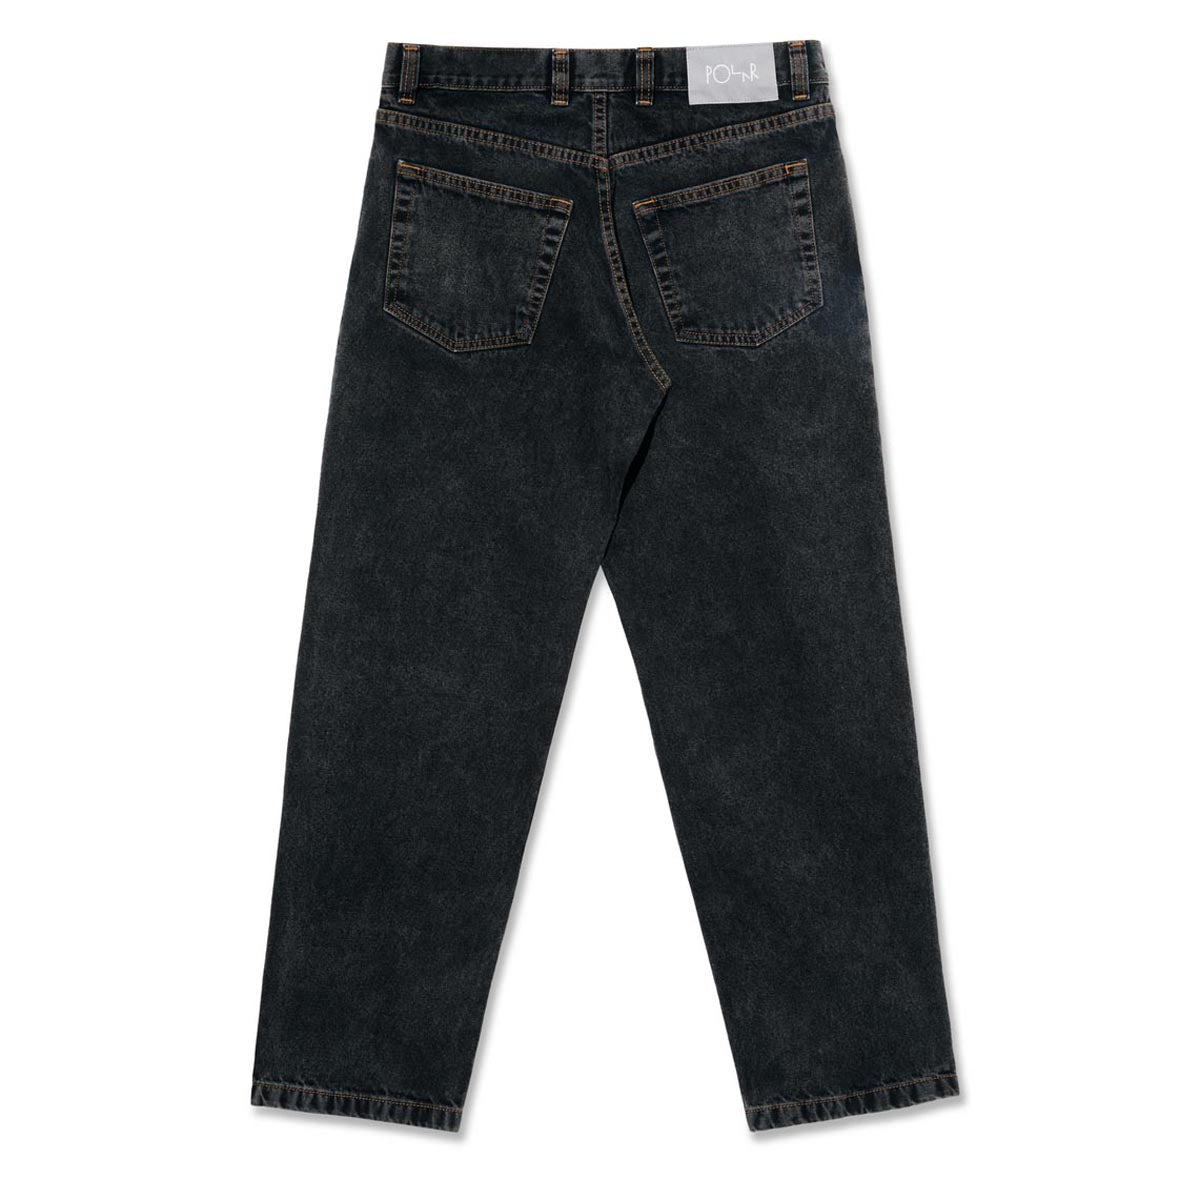 Polar 89! Denim Jeans - Washed Black image 2